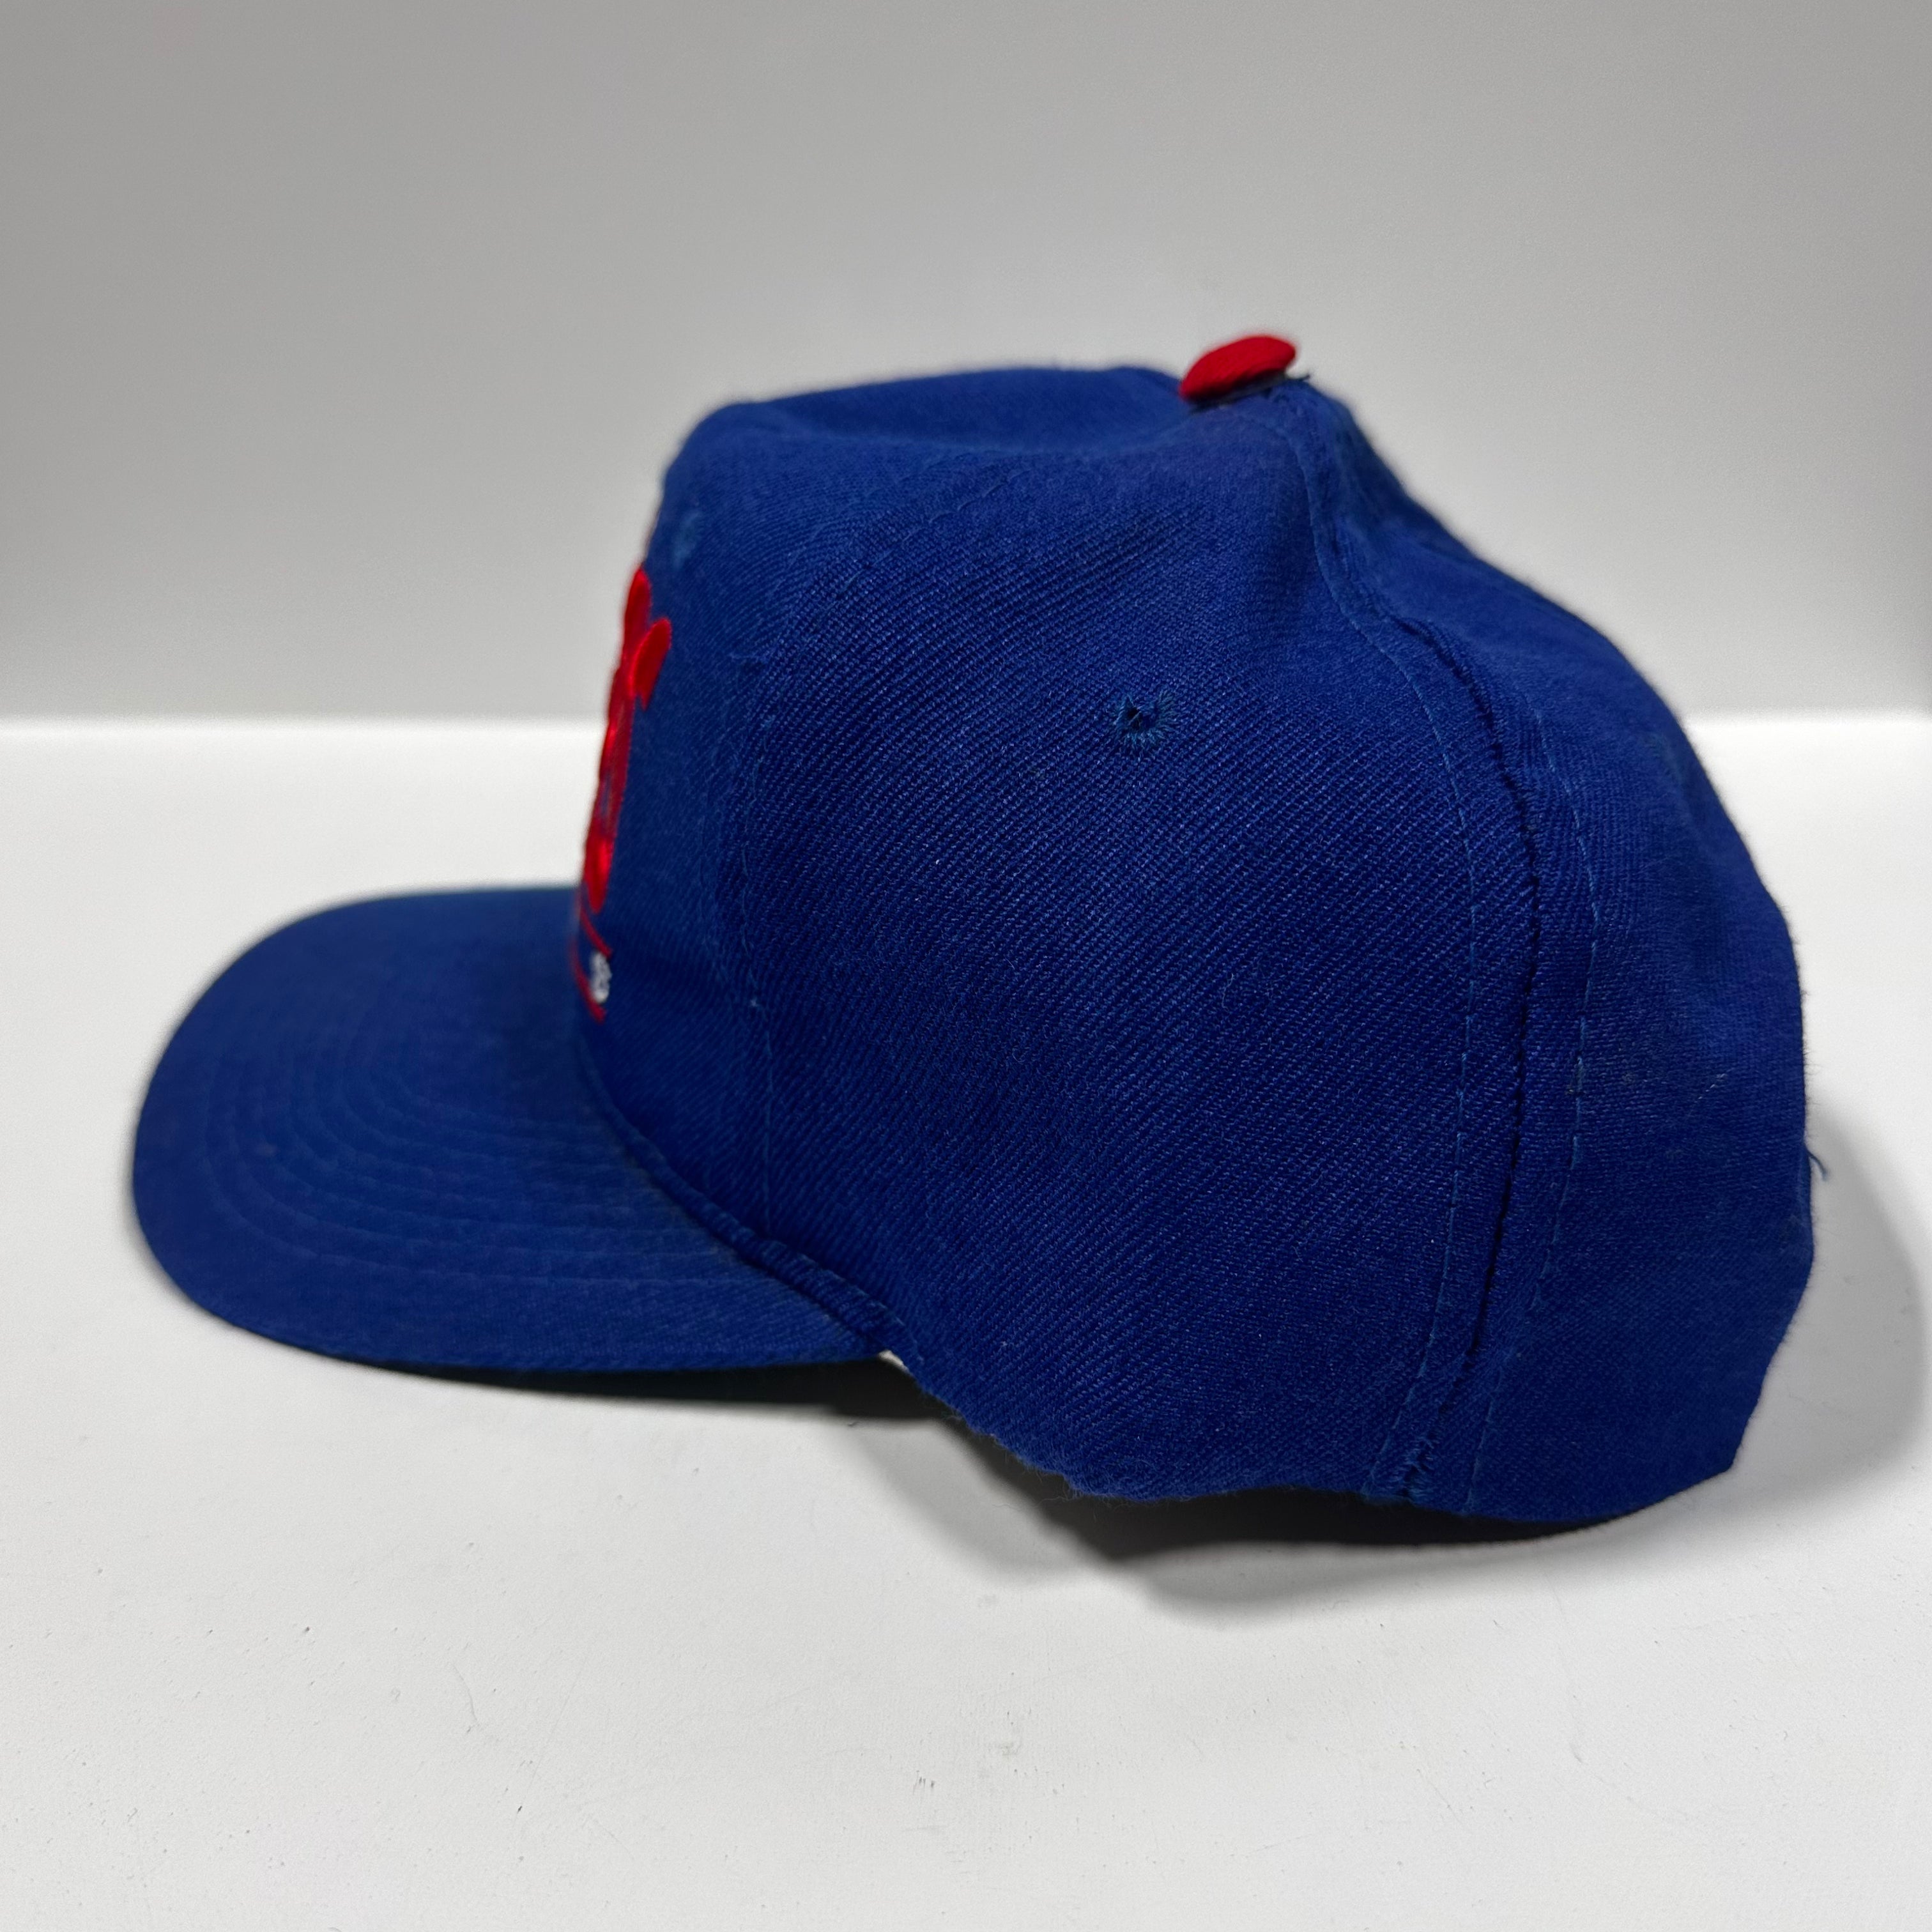 Vintage Texas Rangers Snapback Hat NWT – Mass Vintage